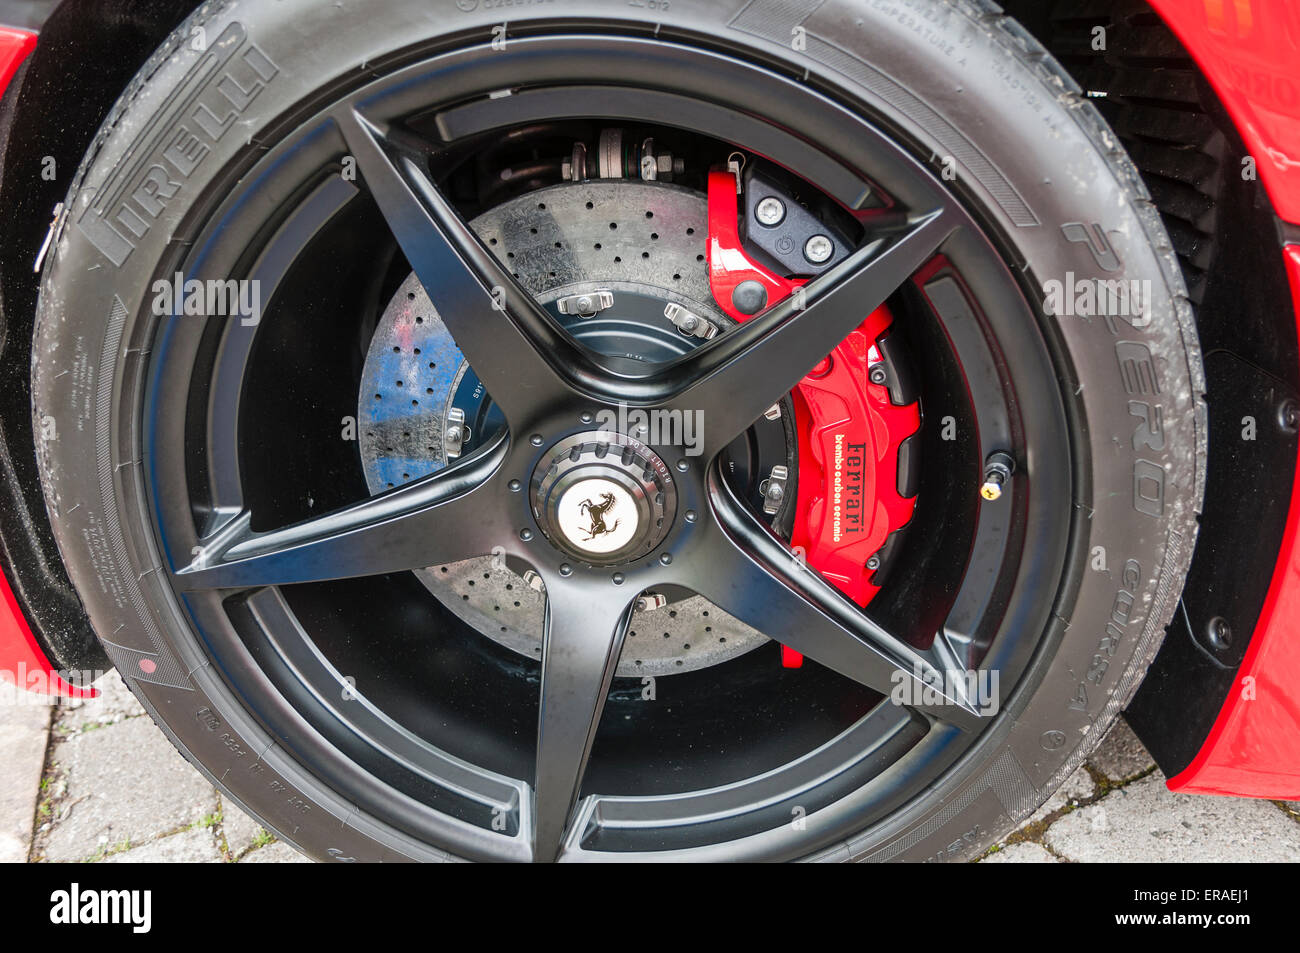 Brembo ceramic brakes on a Ferrari LaFerrari (F150) hybrid supercar Stock Photo